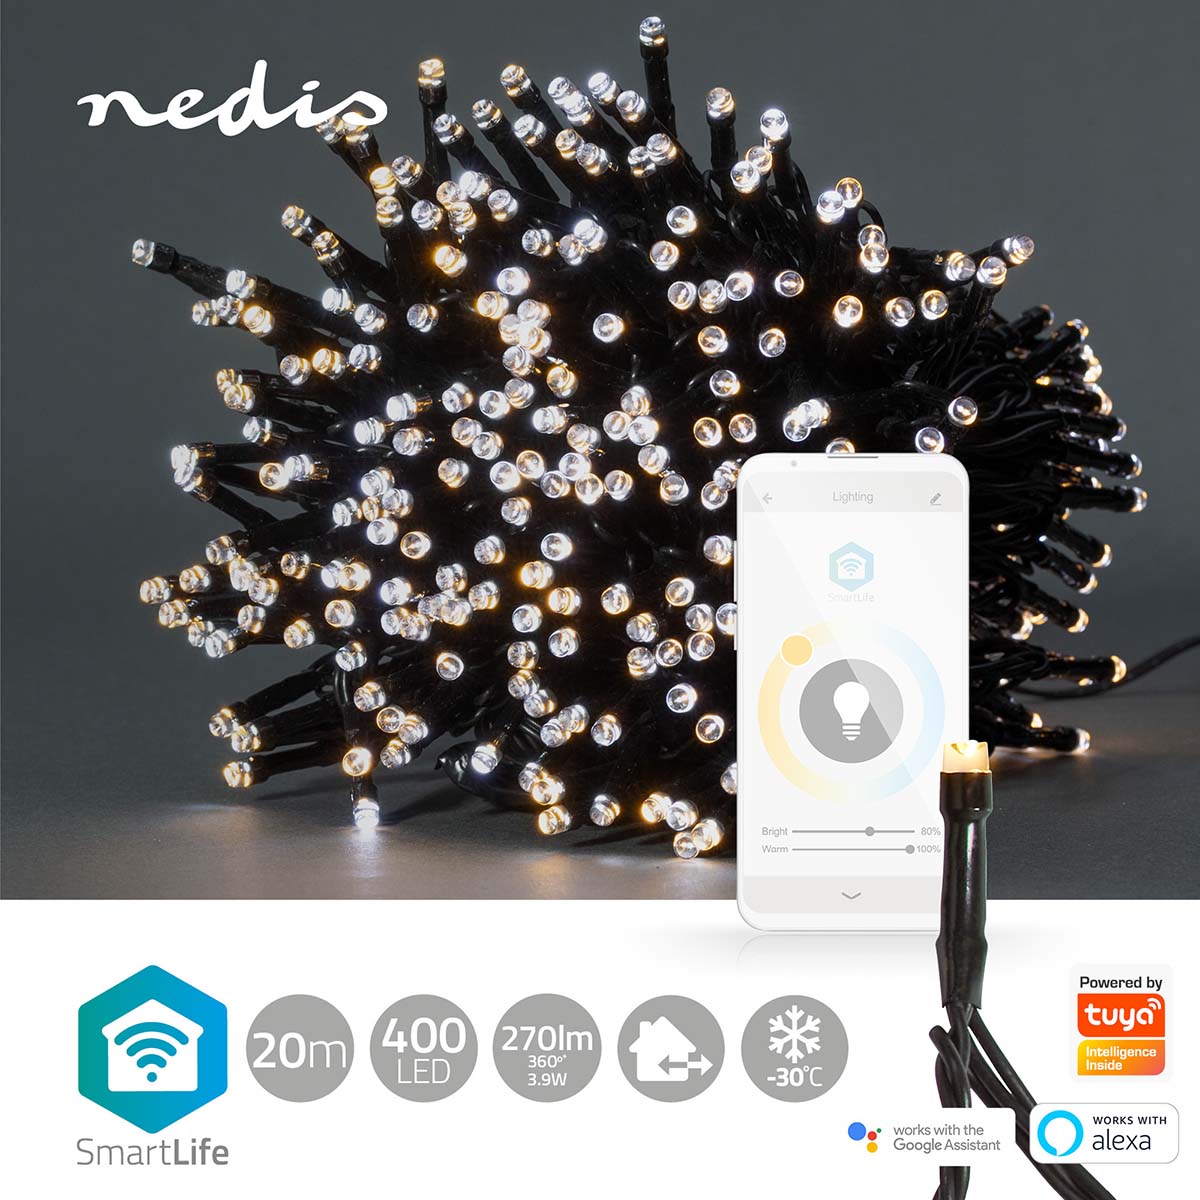 Luzes Nedis Wi-Fi, 400 LEDs em 20m, proporcionam iluminação inteligente para um Natal encantador, combinando tons quentes e frios.